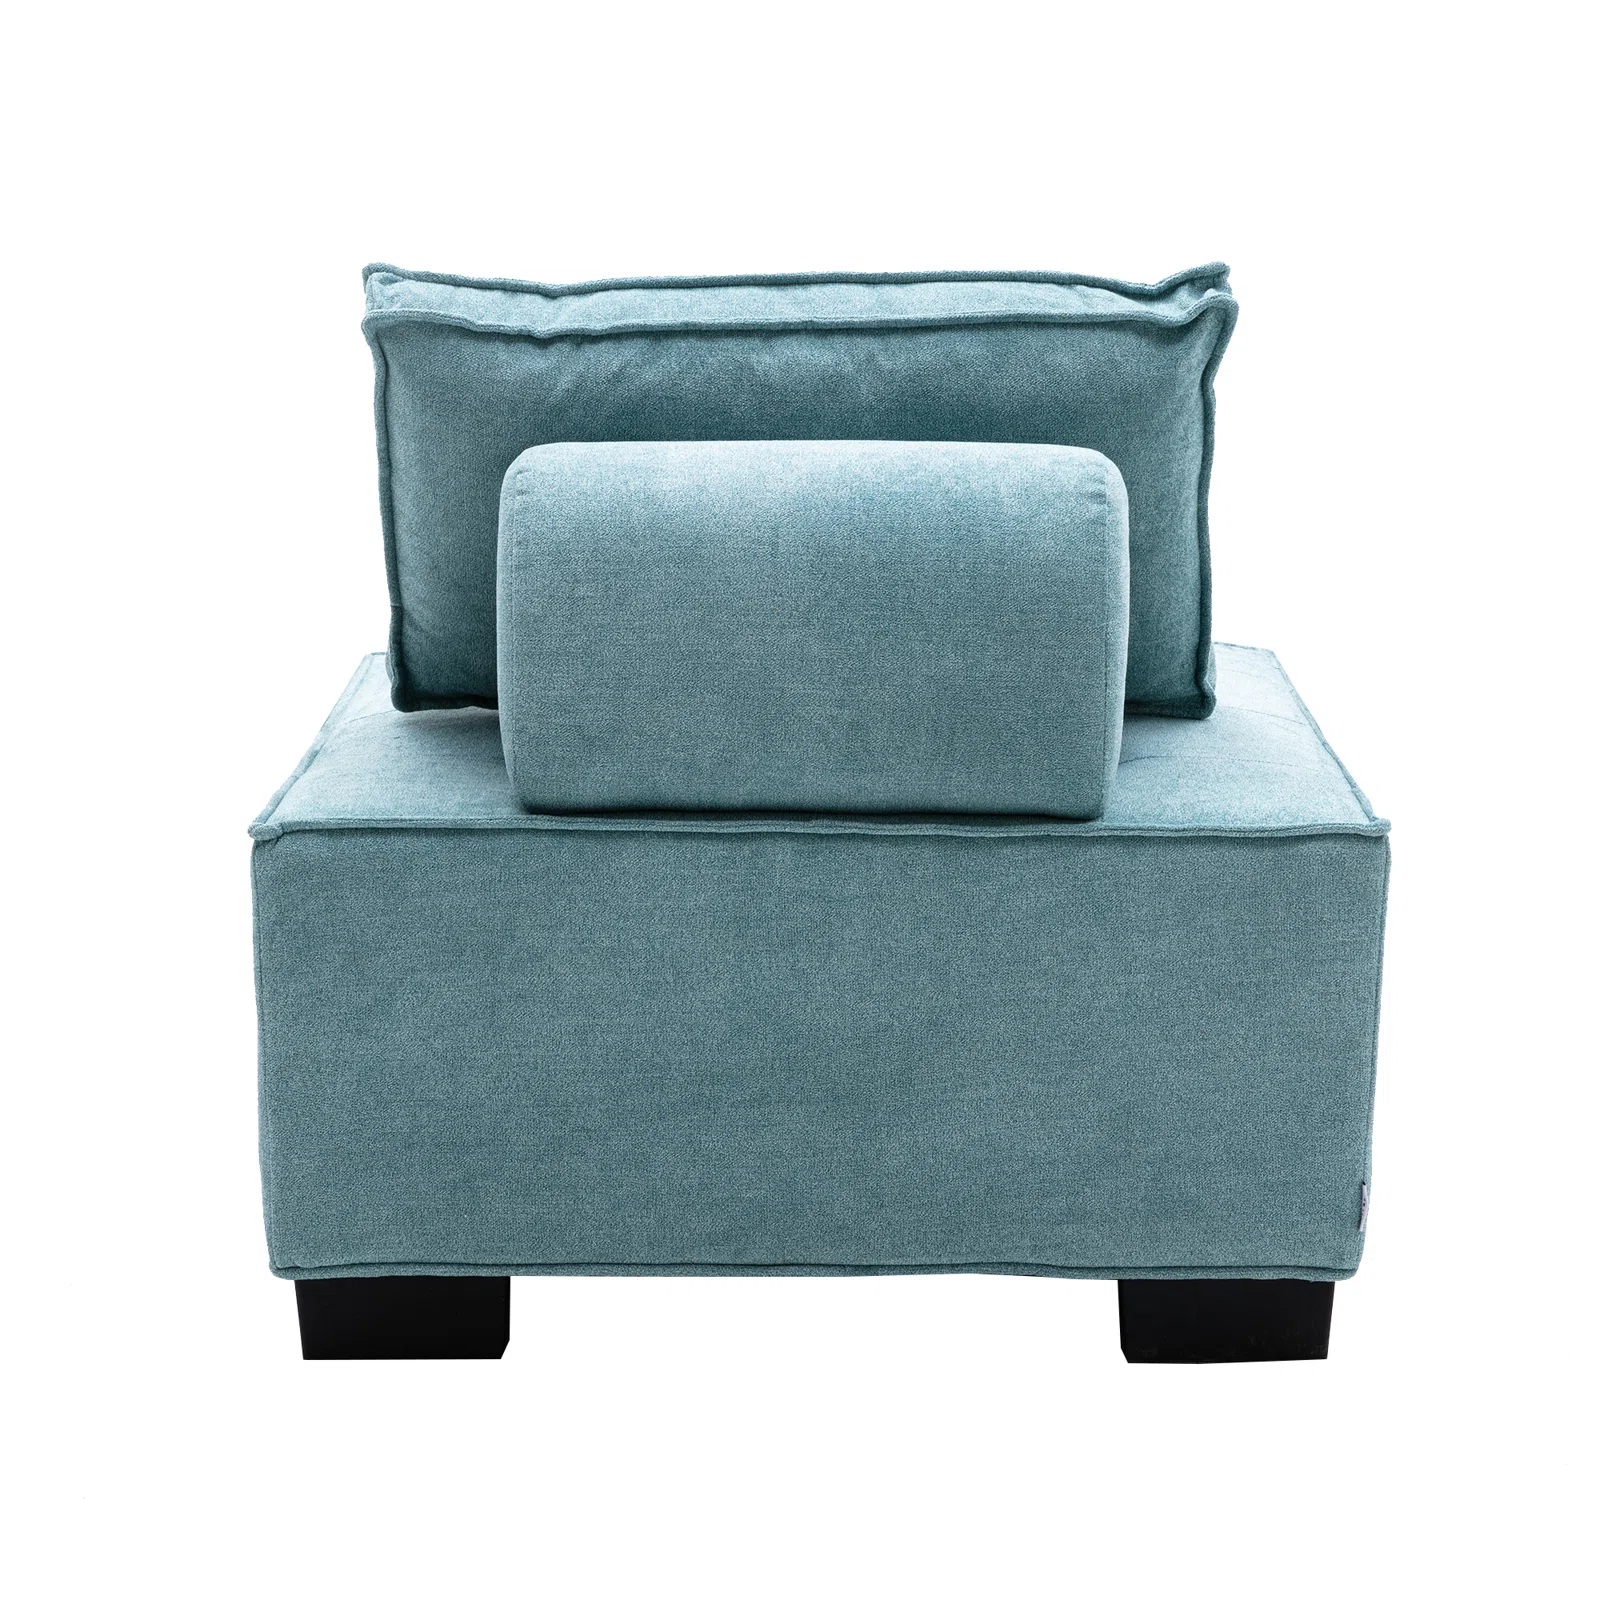 Ghế đôn sofa vuông tựa lưng nhiều kích cỡ, nhiều màu sắc